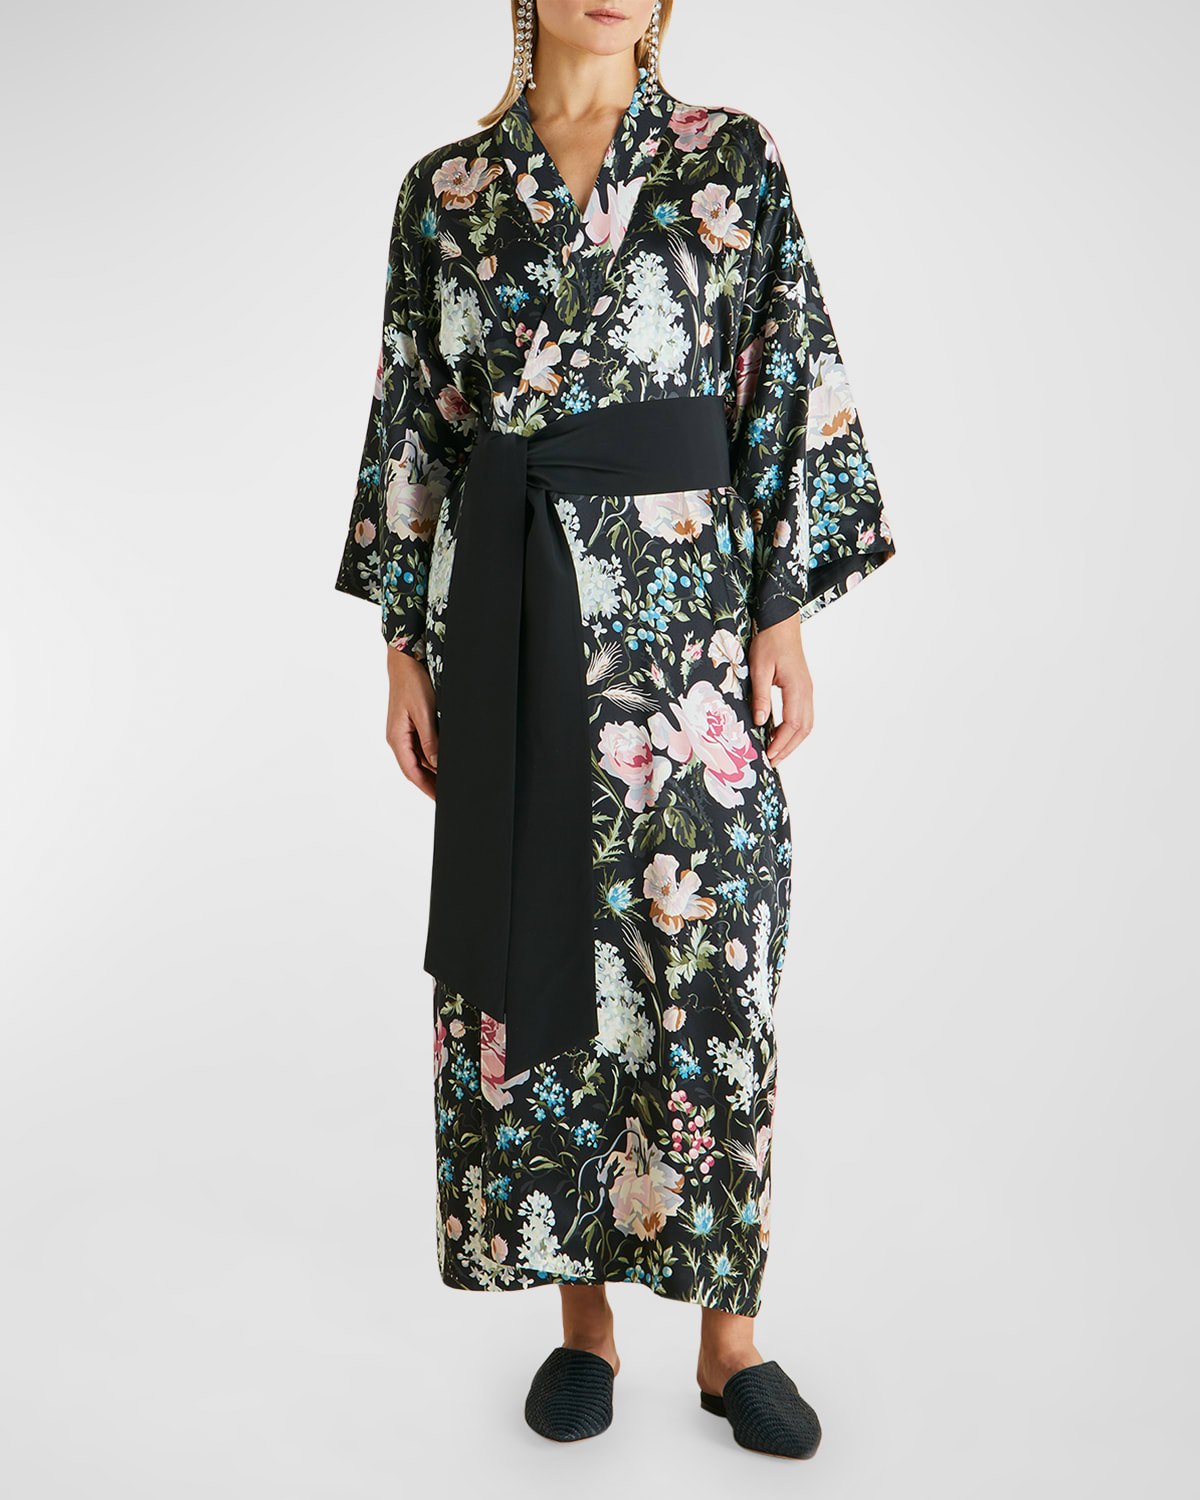 Queenie Floral-Print Silk Robe